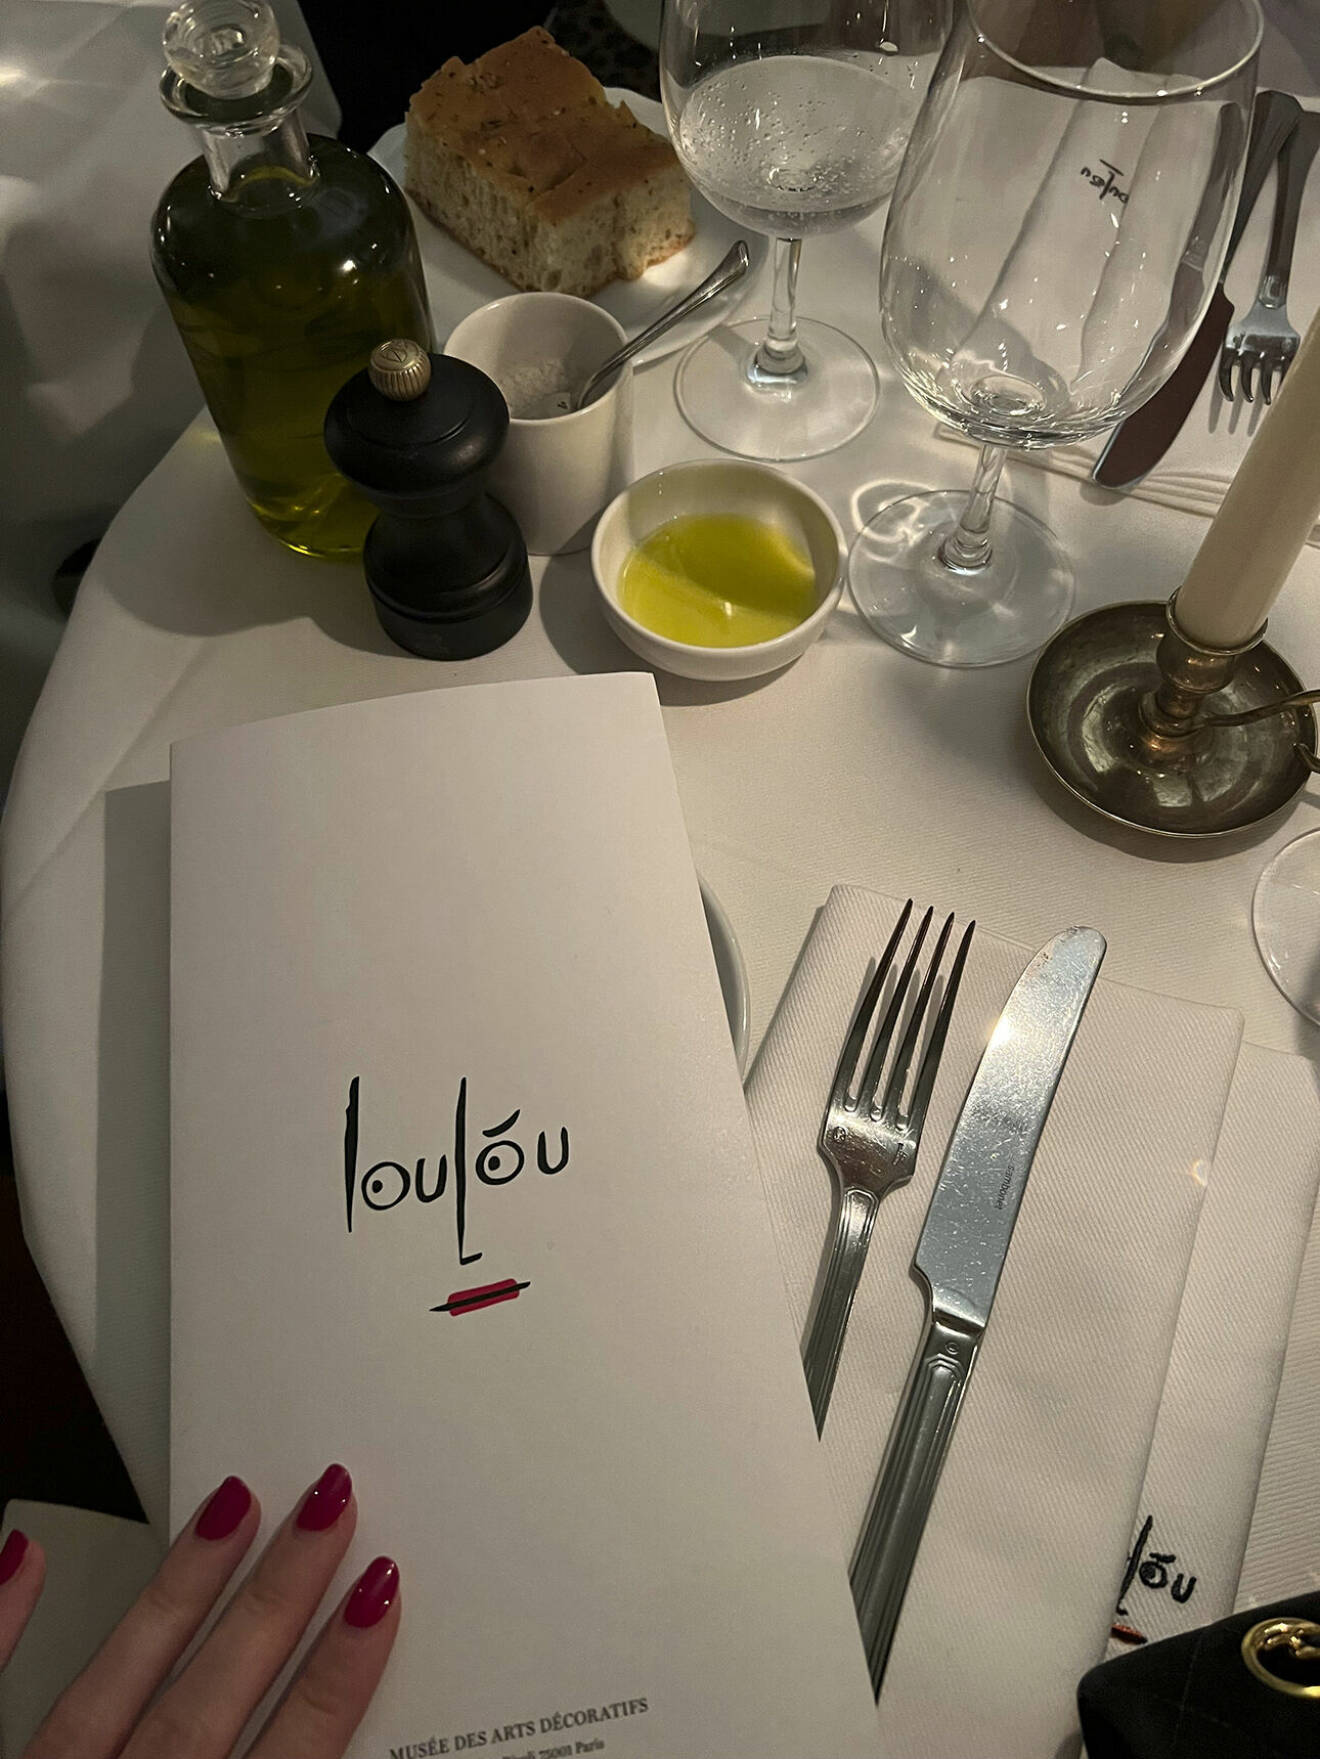 Ät middag på ikoniska Loulou som ligger precis bredvid Louvren